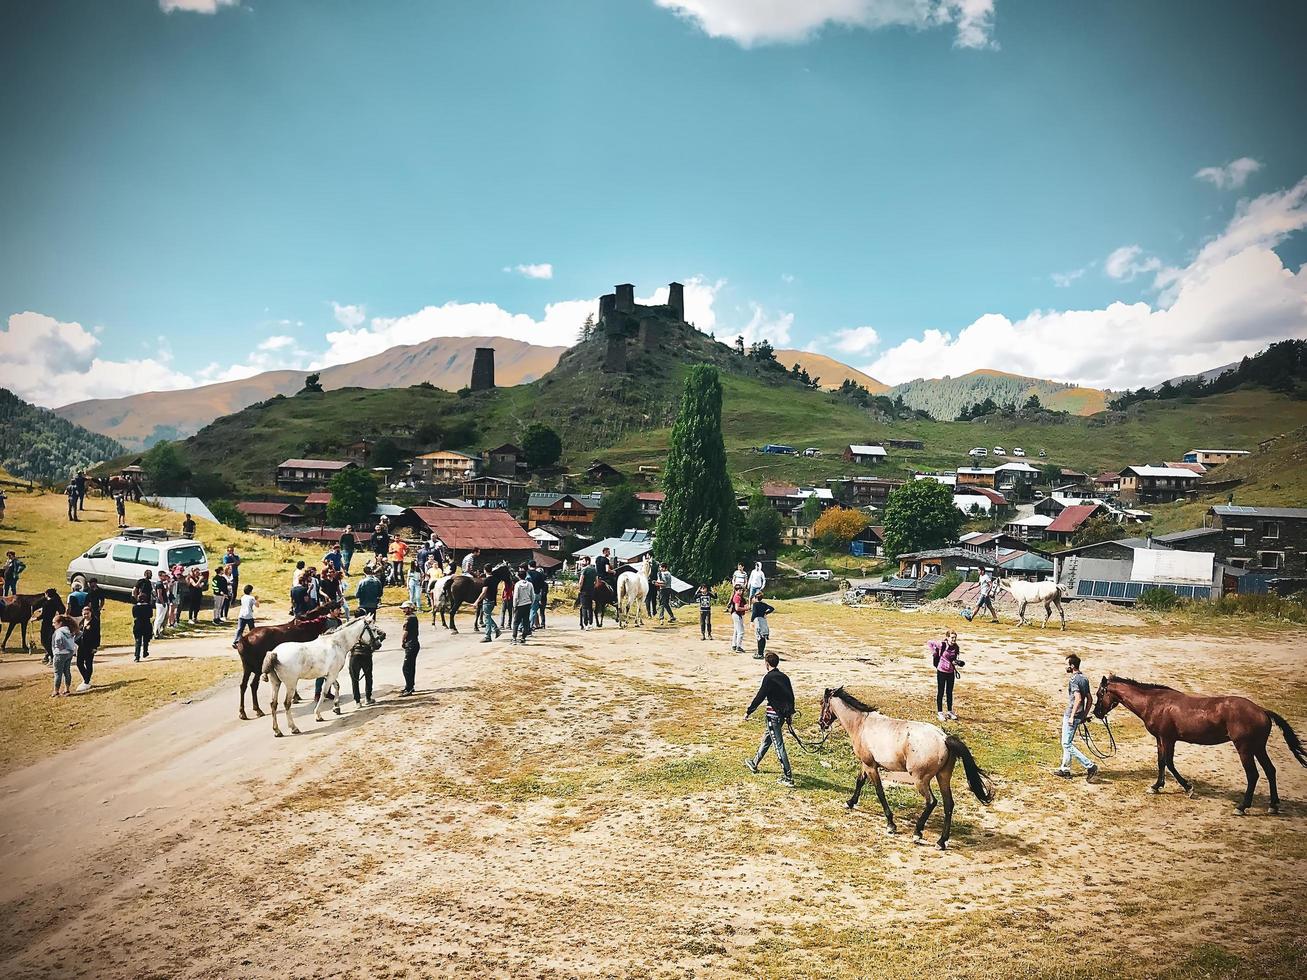 tusheti, georgia 2020- tushetoba tradizionale corsa di cavalli dove cavalieri e spettatori si riuniscono nel tradizionale festival tushetiano foto